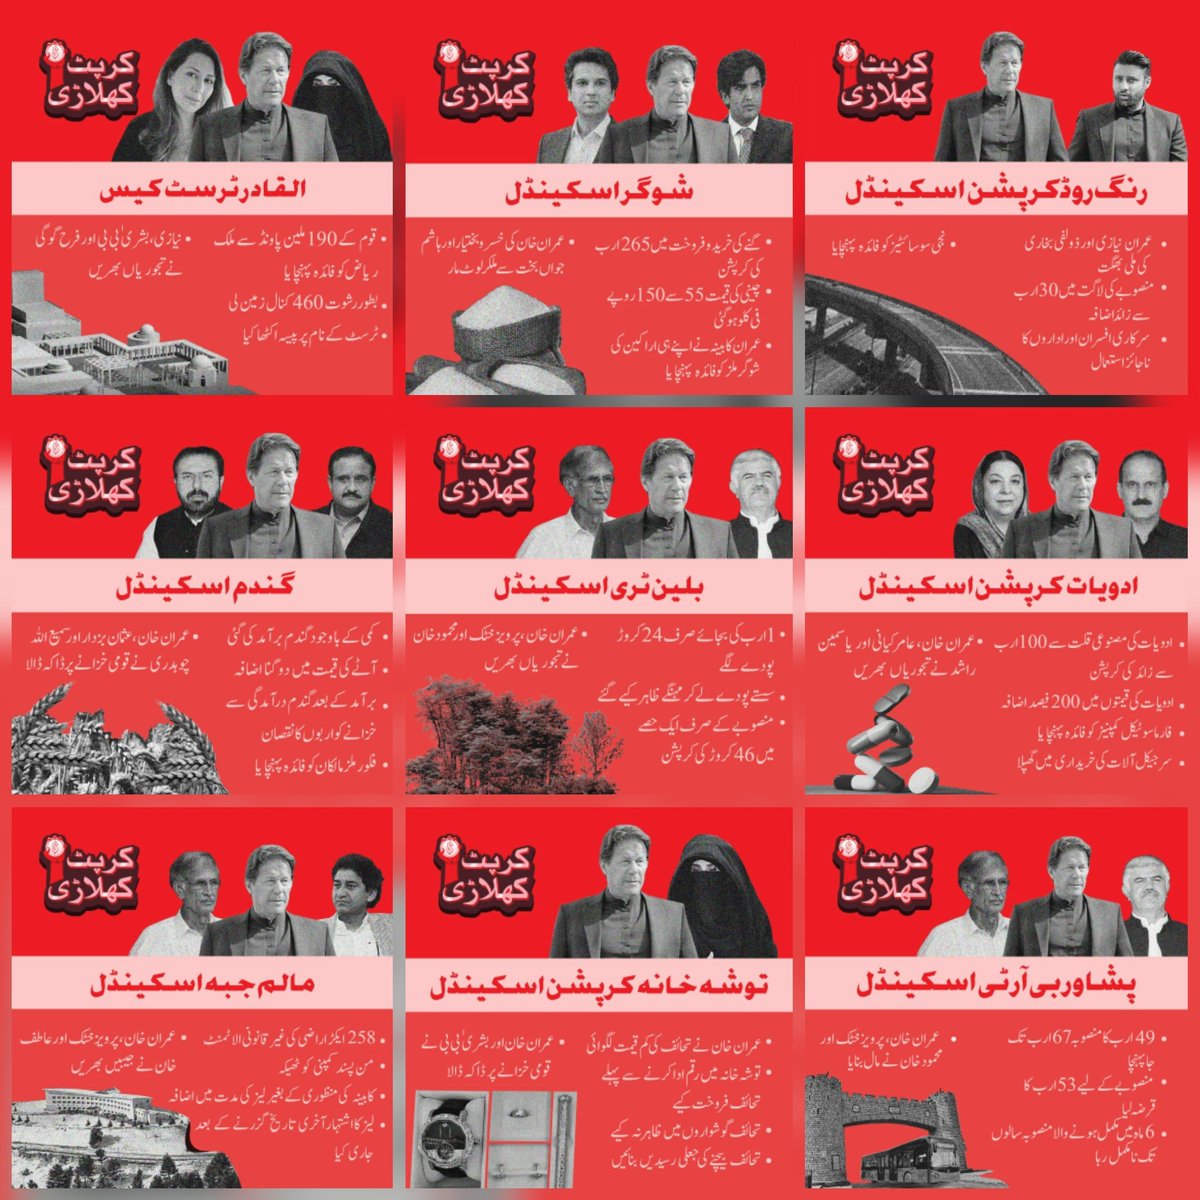 پاکستان کے سرٹیفائیڈ چور عمران نیازی کی کرپشن کی فہرست #فراڈ_فساد_عمران_خان